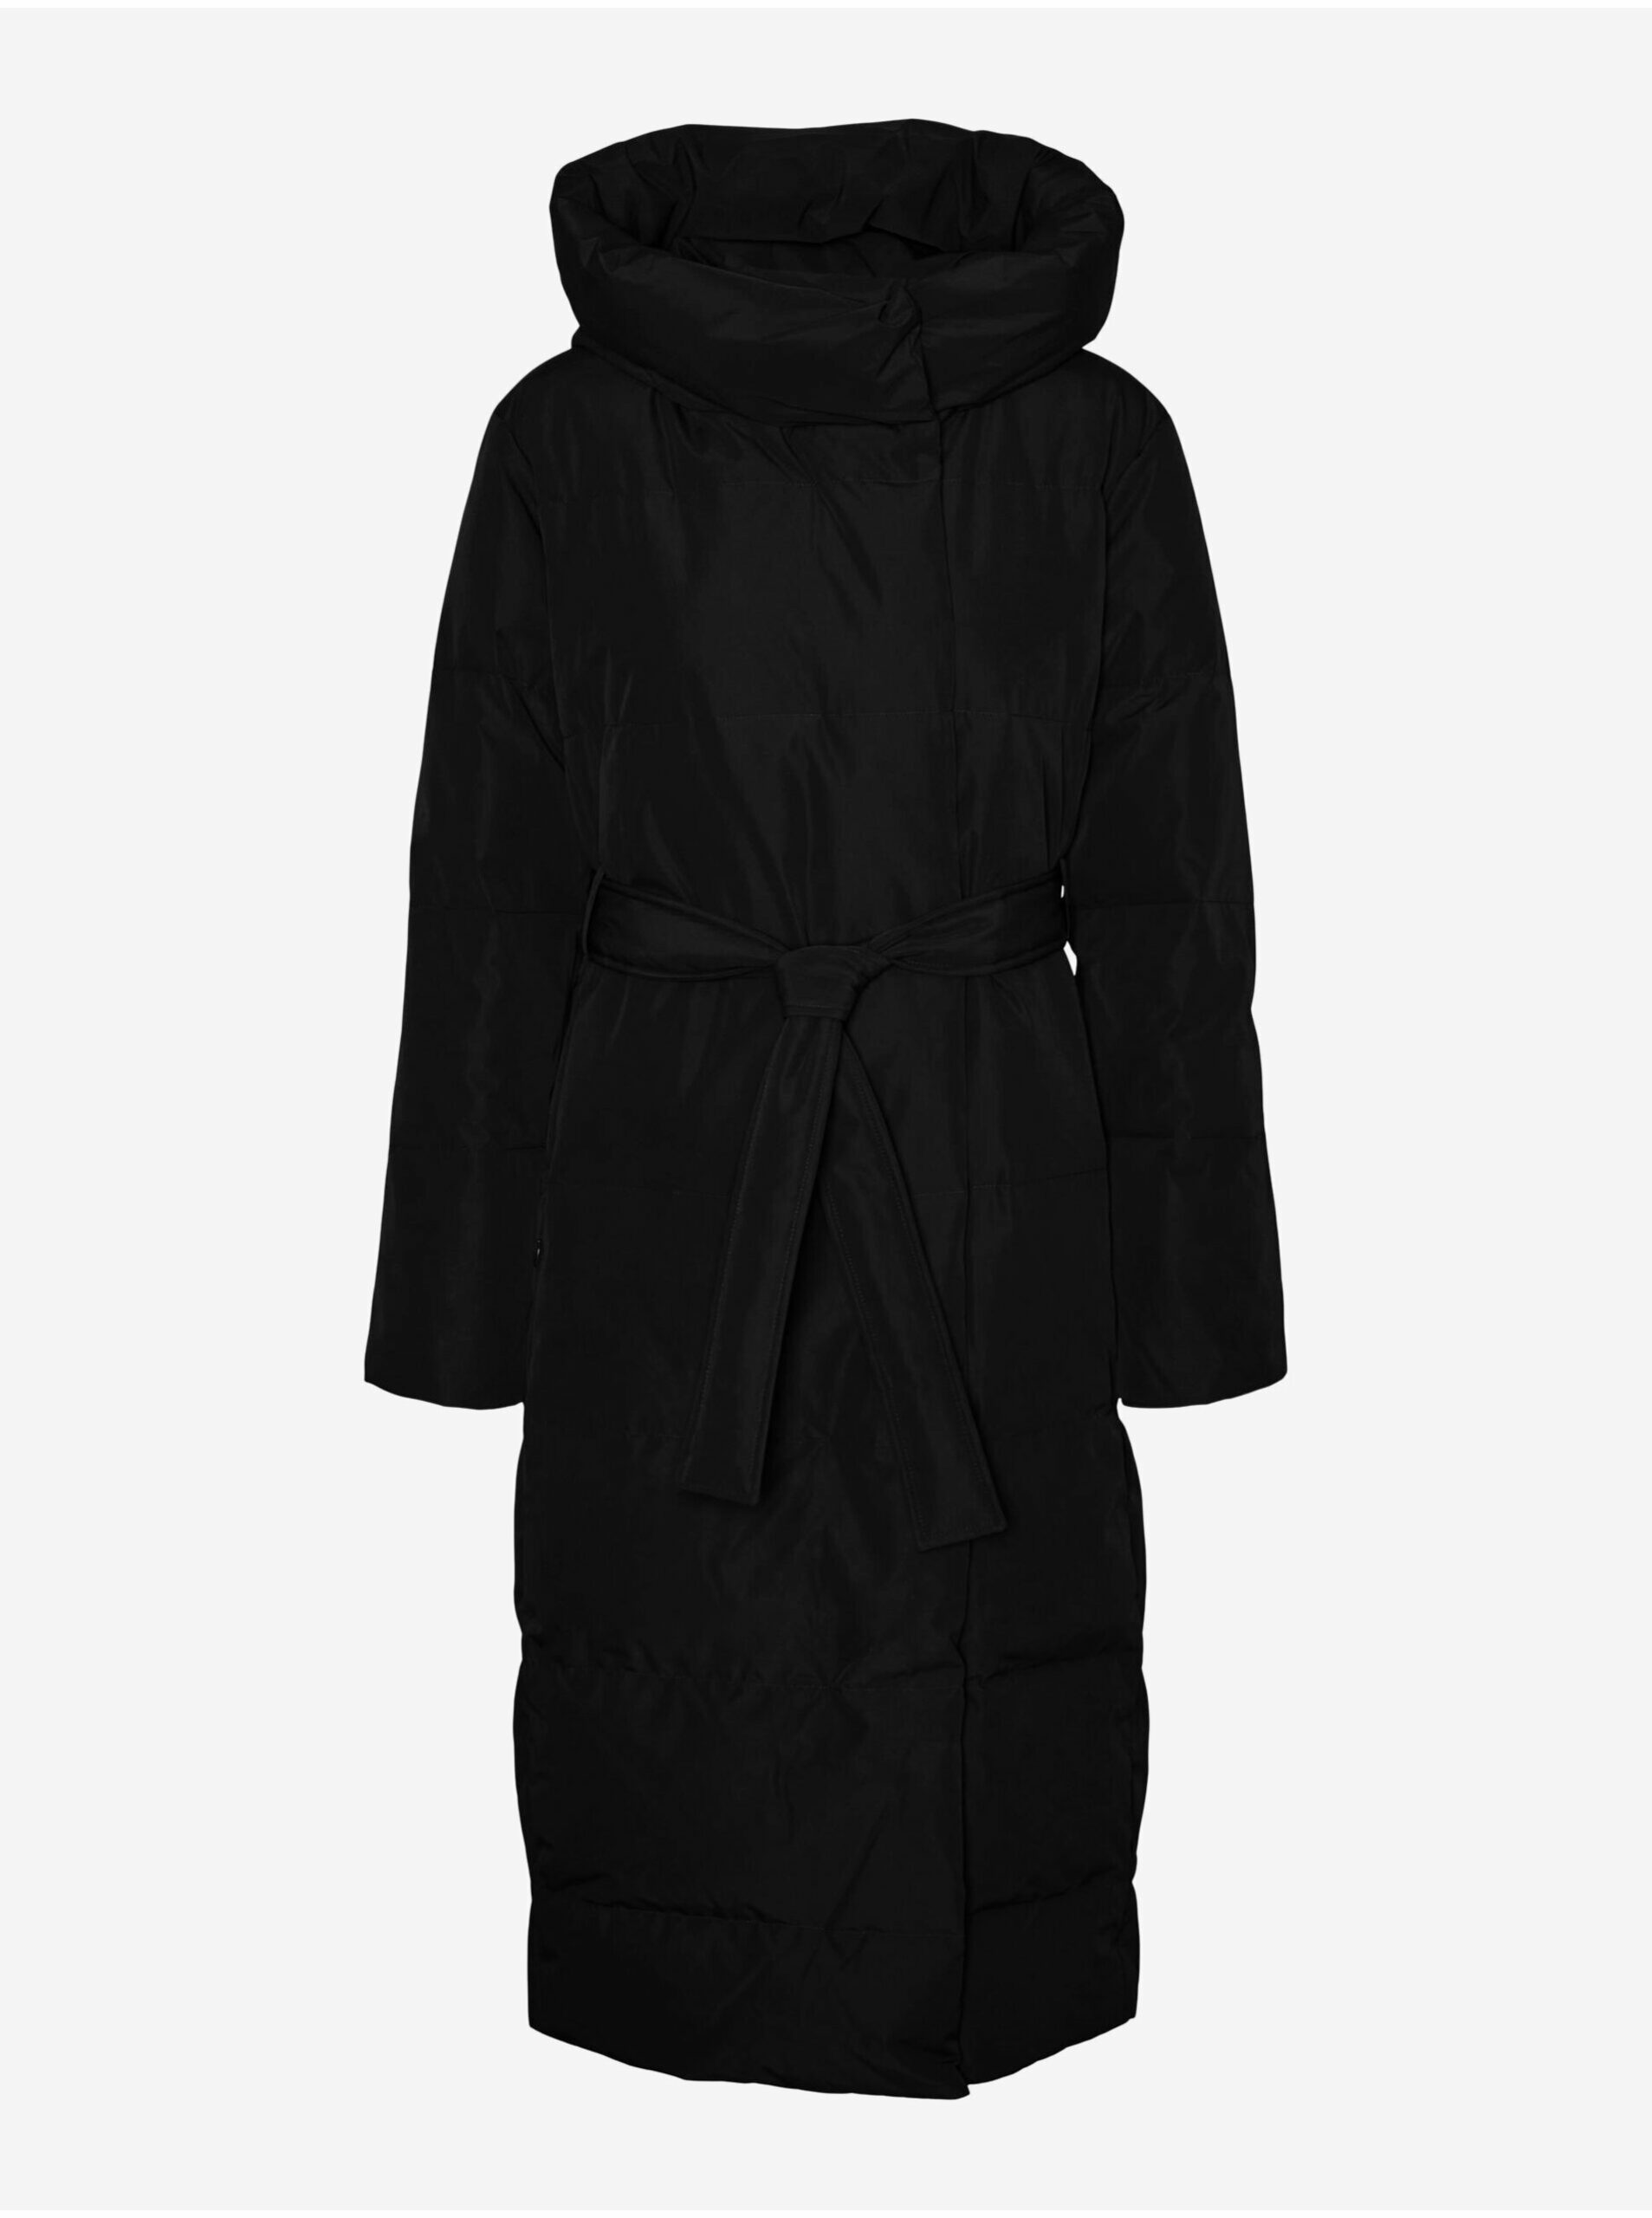 Čierny dámsky zimný kabát VERO MODA Leonie